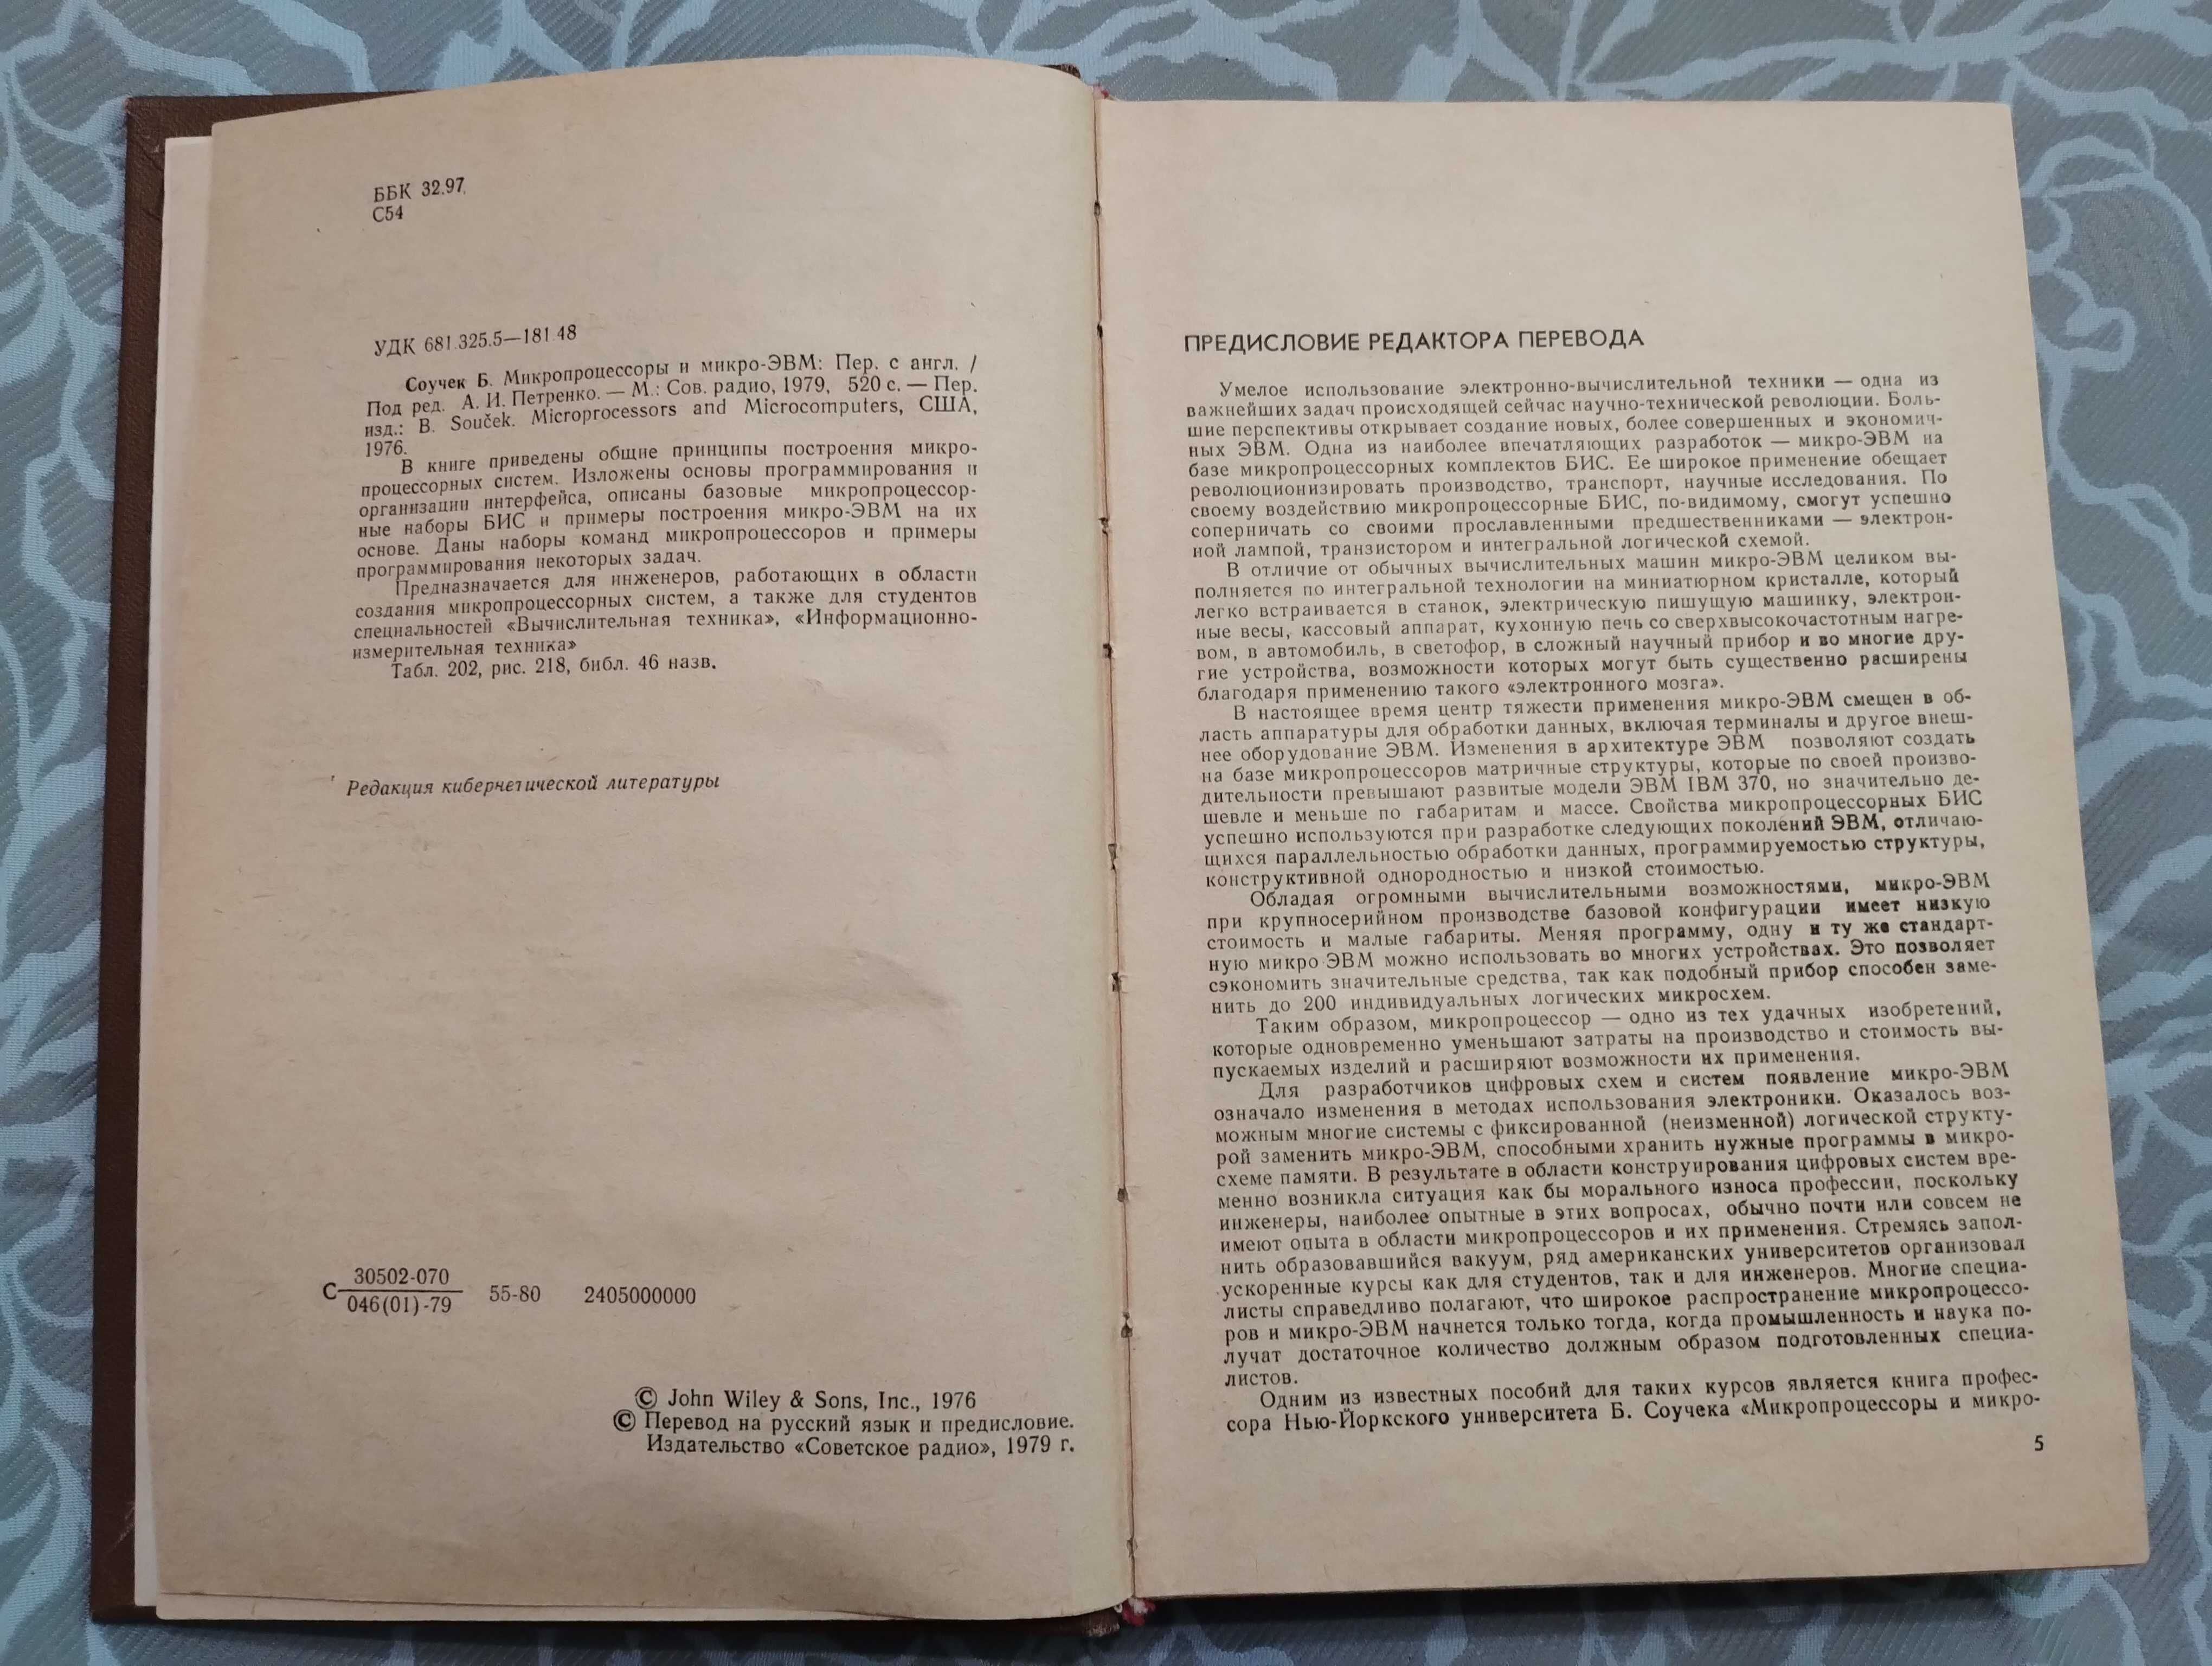 Книга "Микропроцессоры и микро- ЭВМ." Б. Соучек. 1979 год.